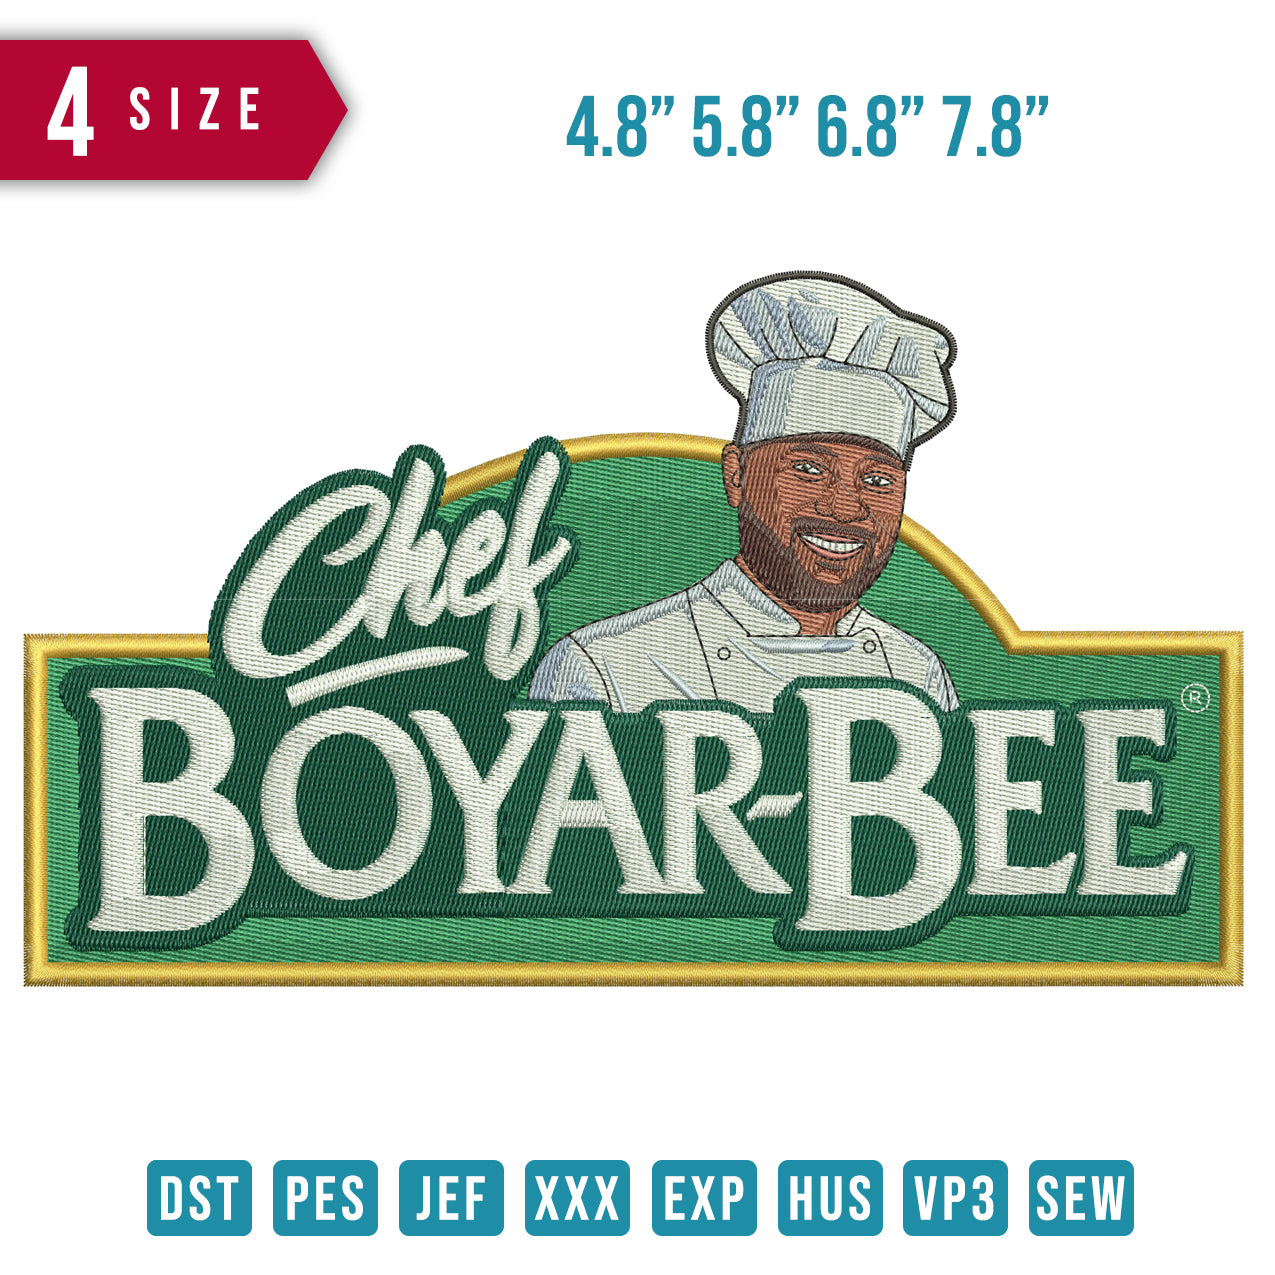 Chef boyarbee